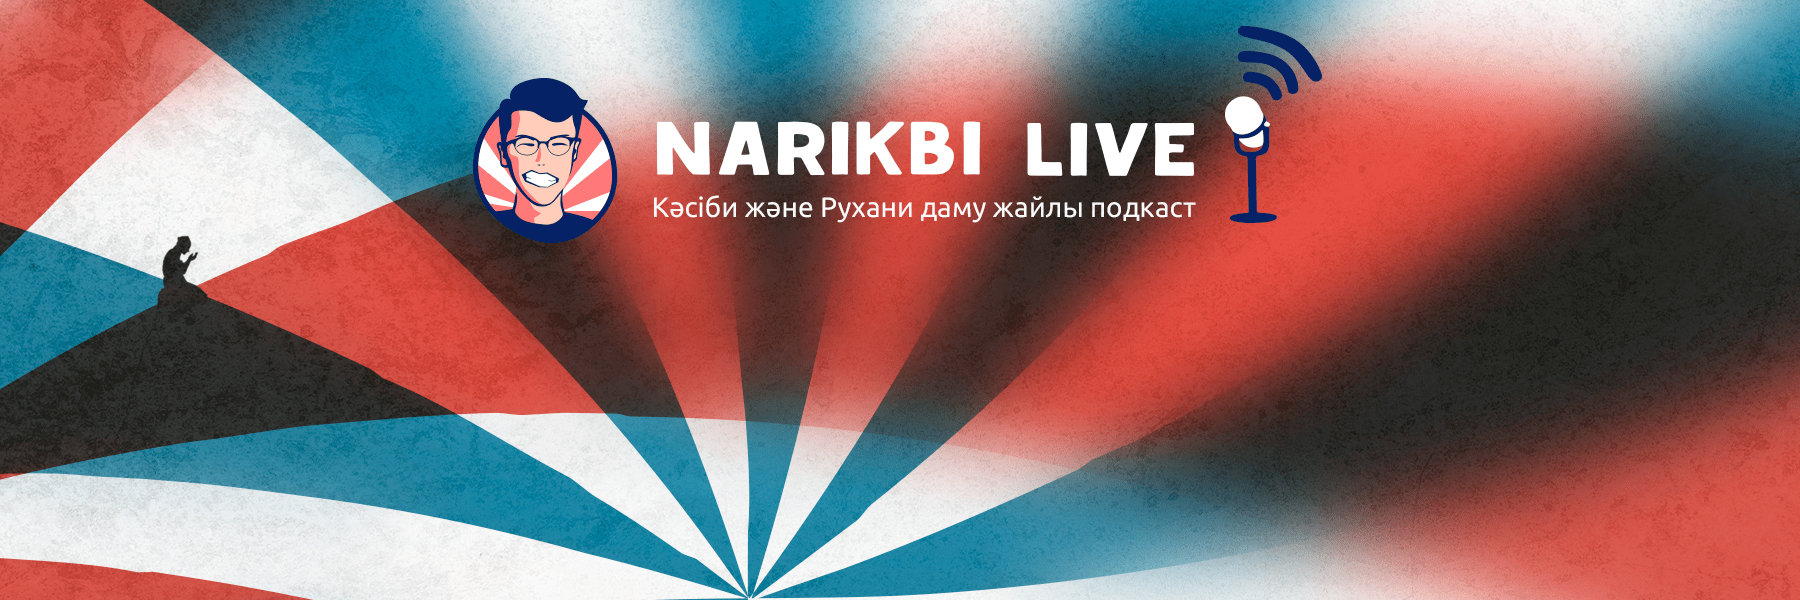 Narikbi LIVE